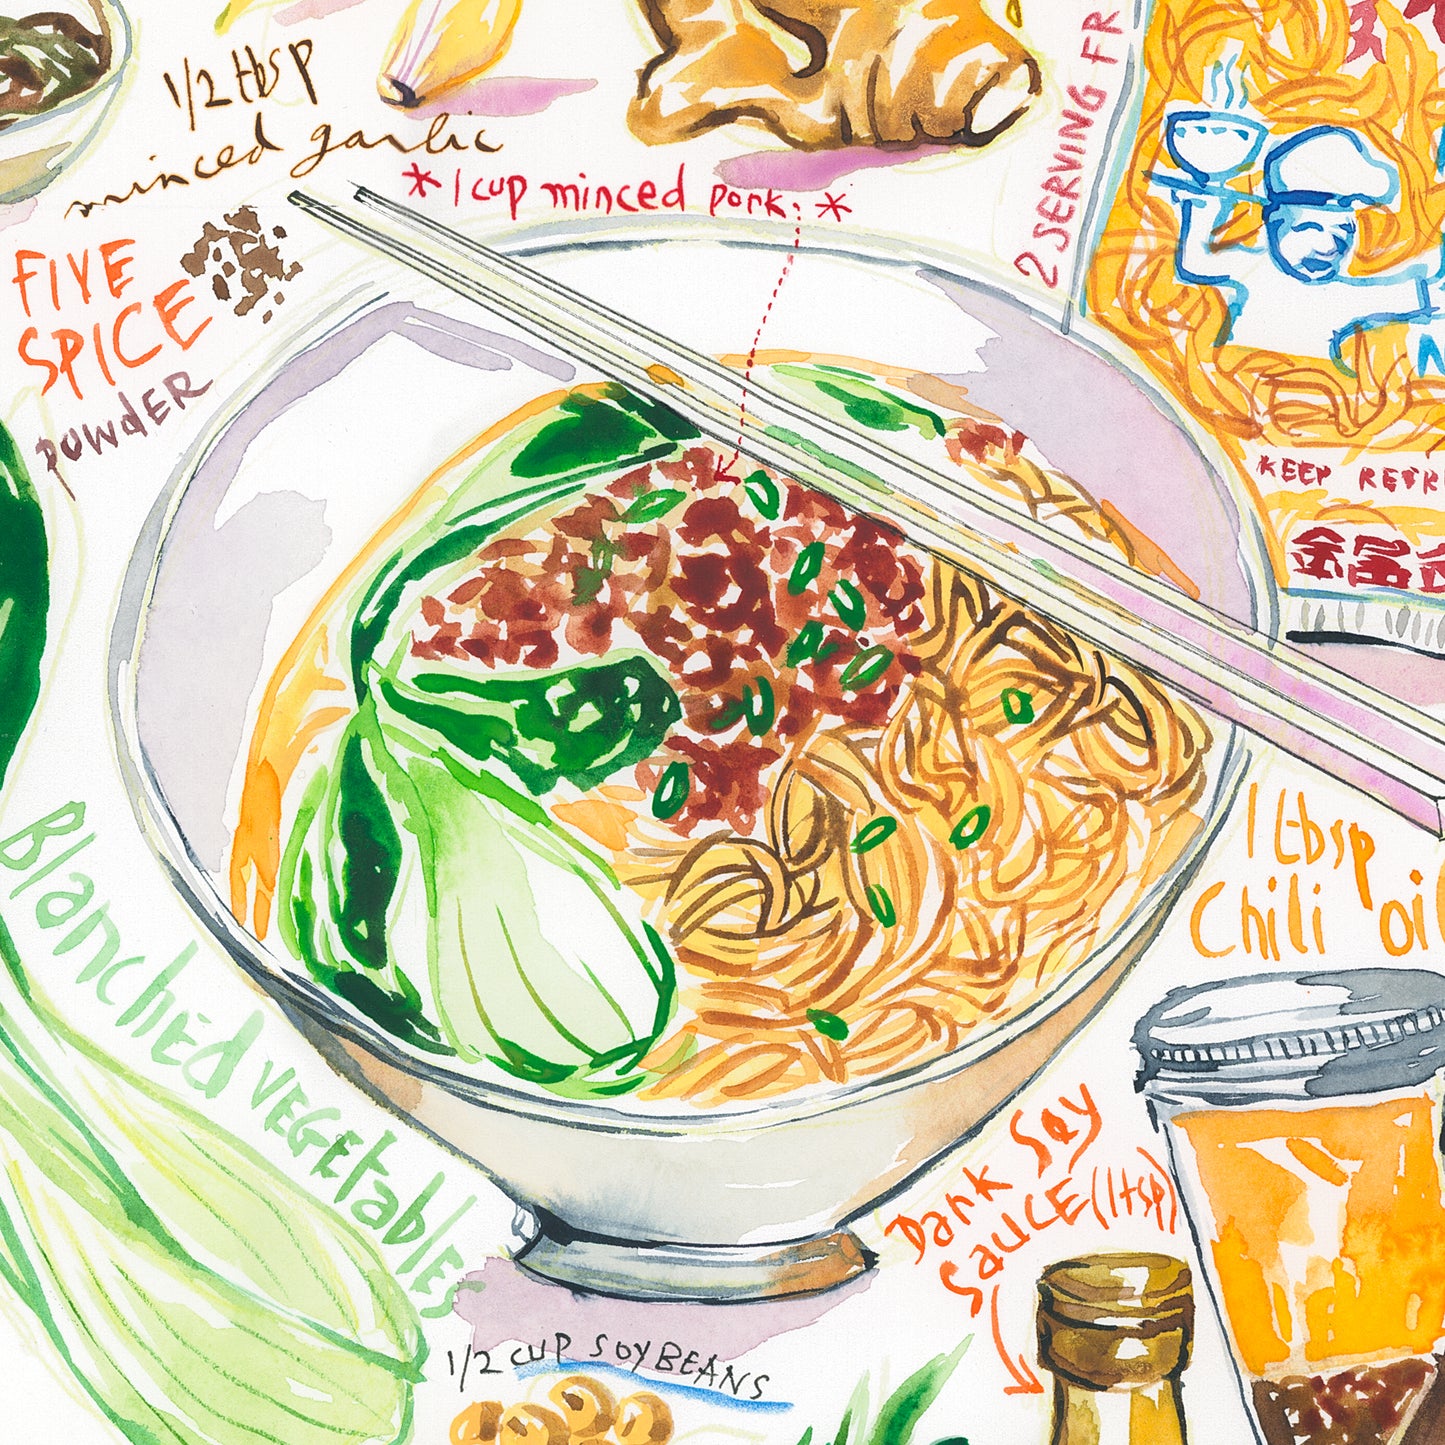 Chinese Dan Dan noodles recipe. Original watercolor painting